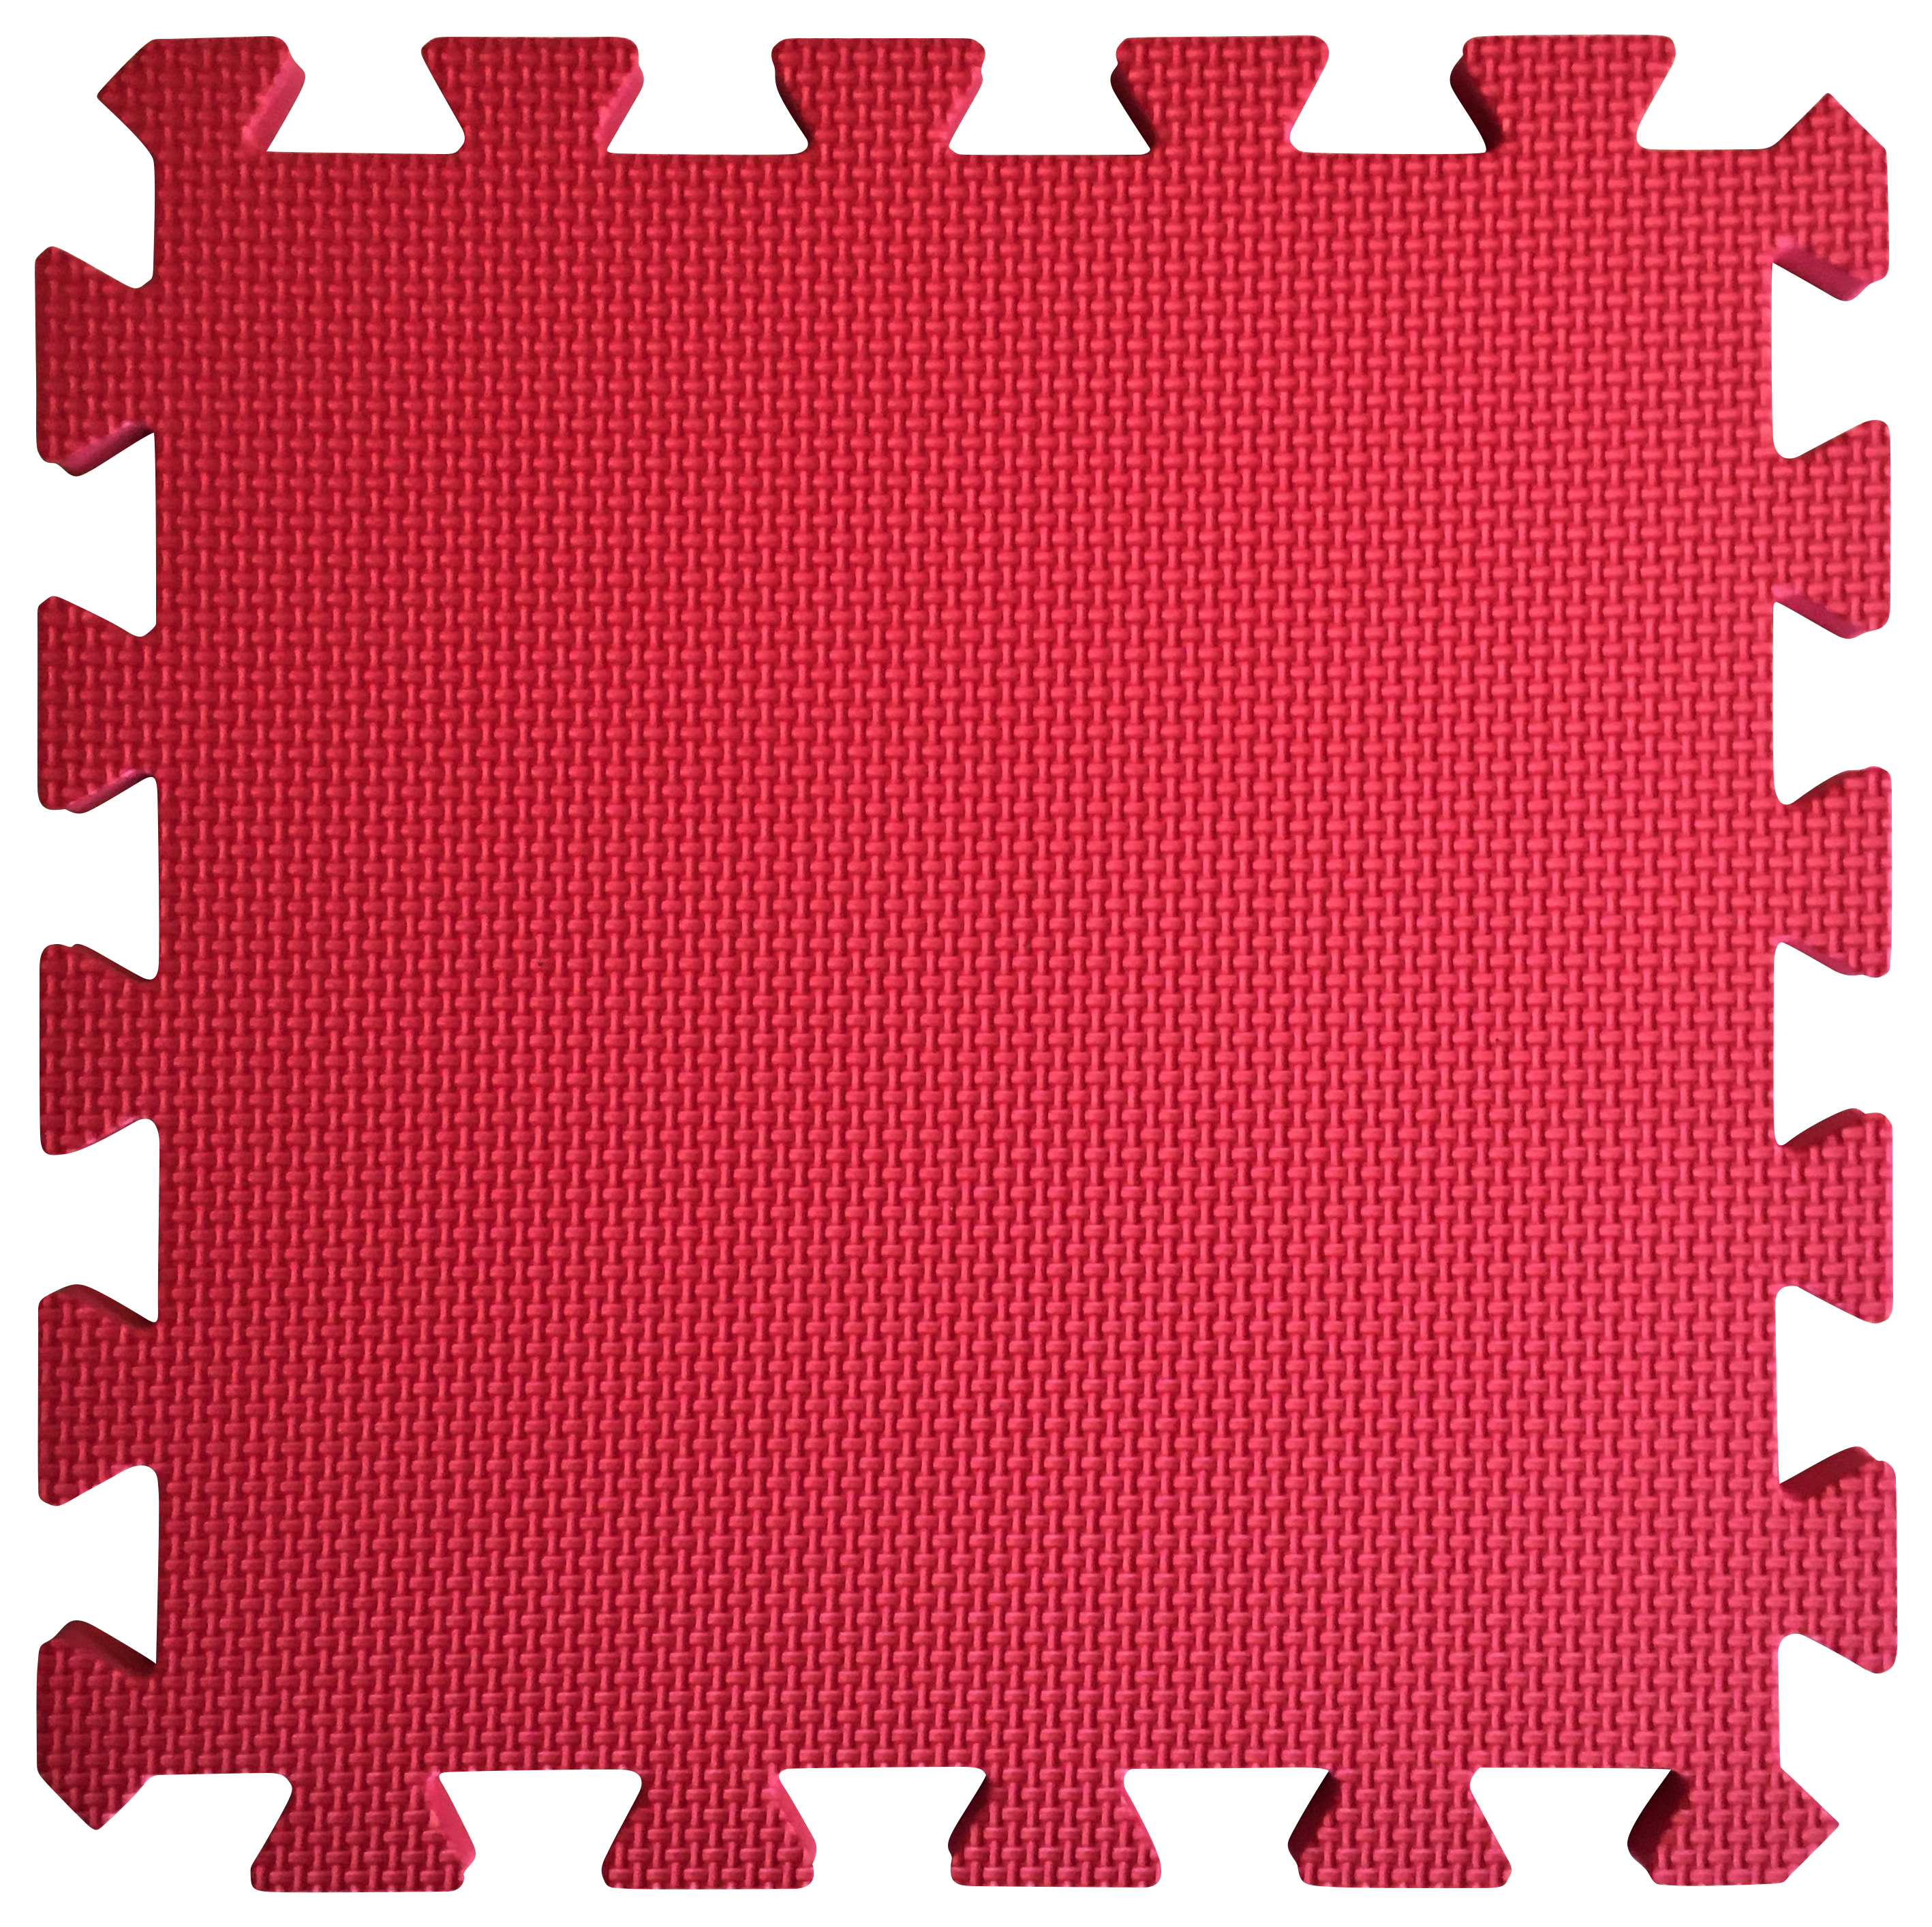 Warm Floor Red Interlocking Floor Tiles for Garden Buildings - 7 x 7ft